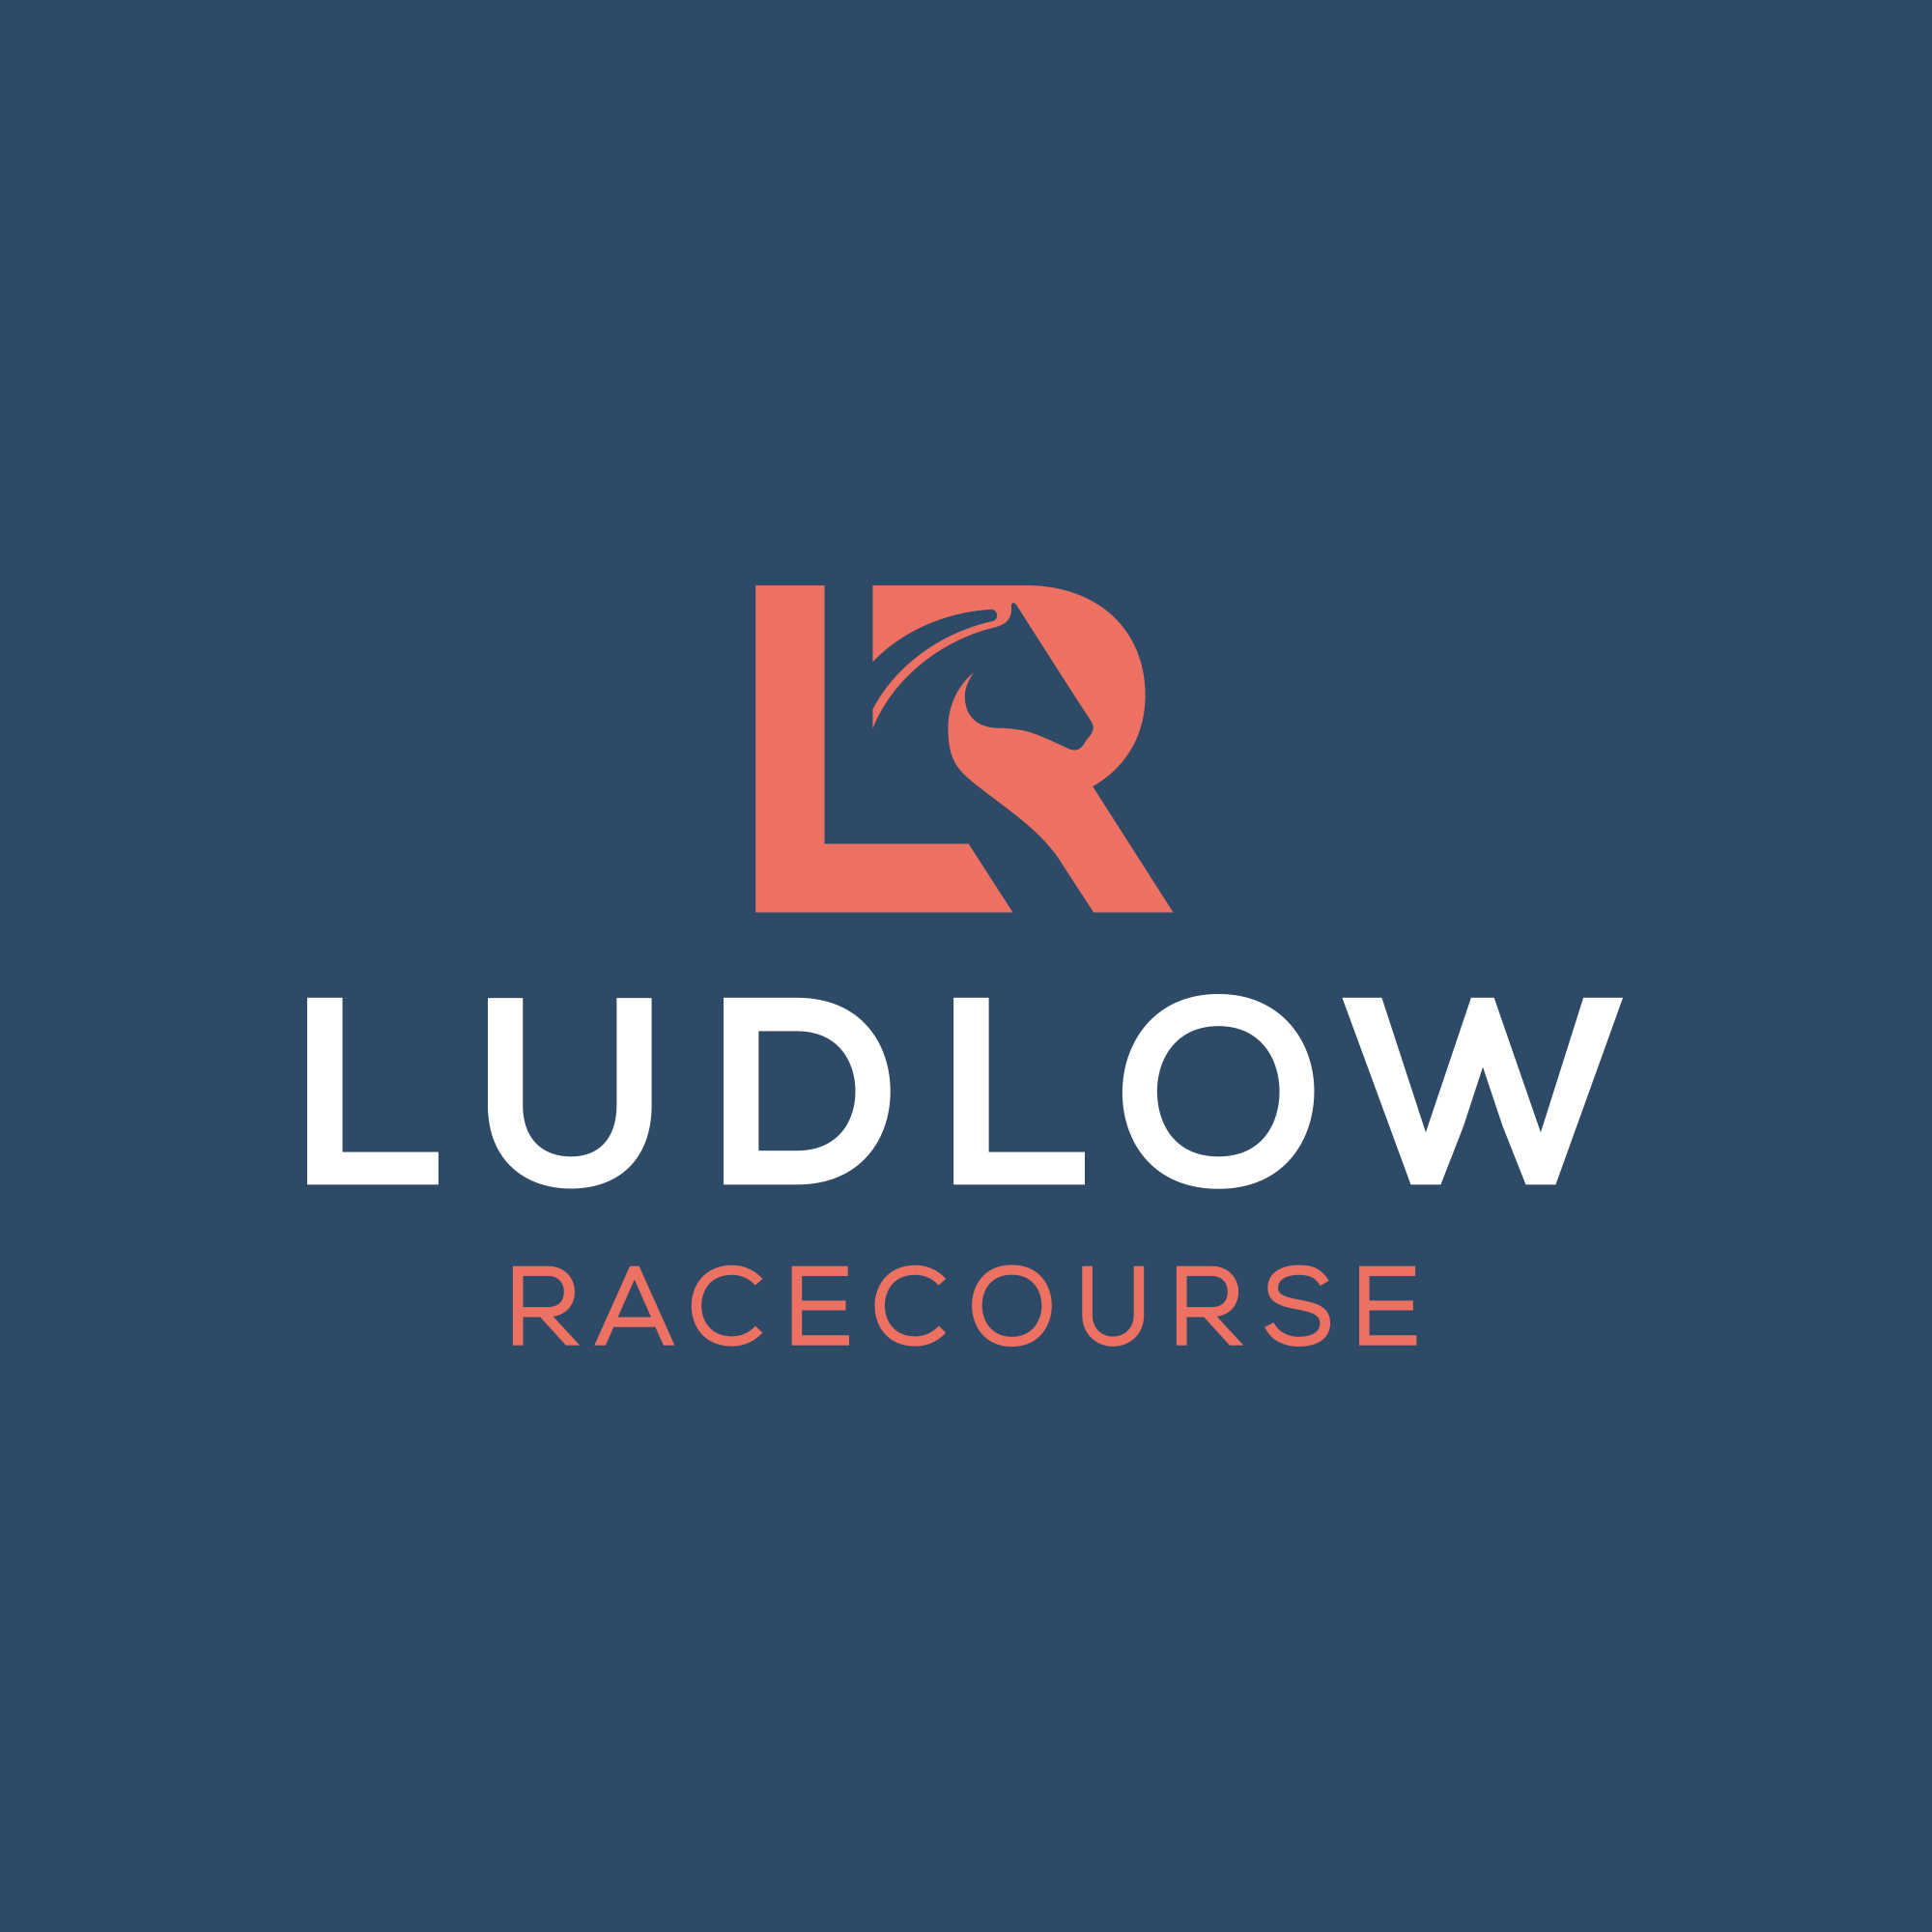 Ludlow Racecourse branding by Reech